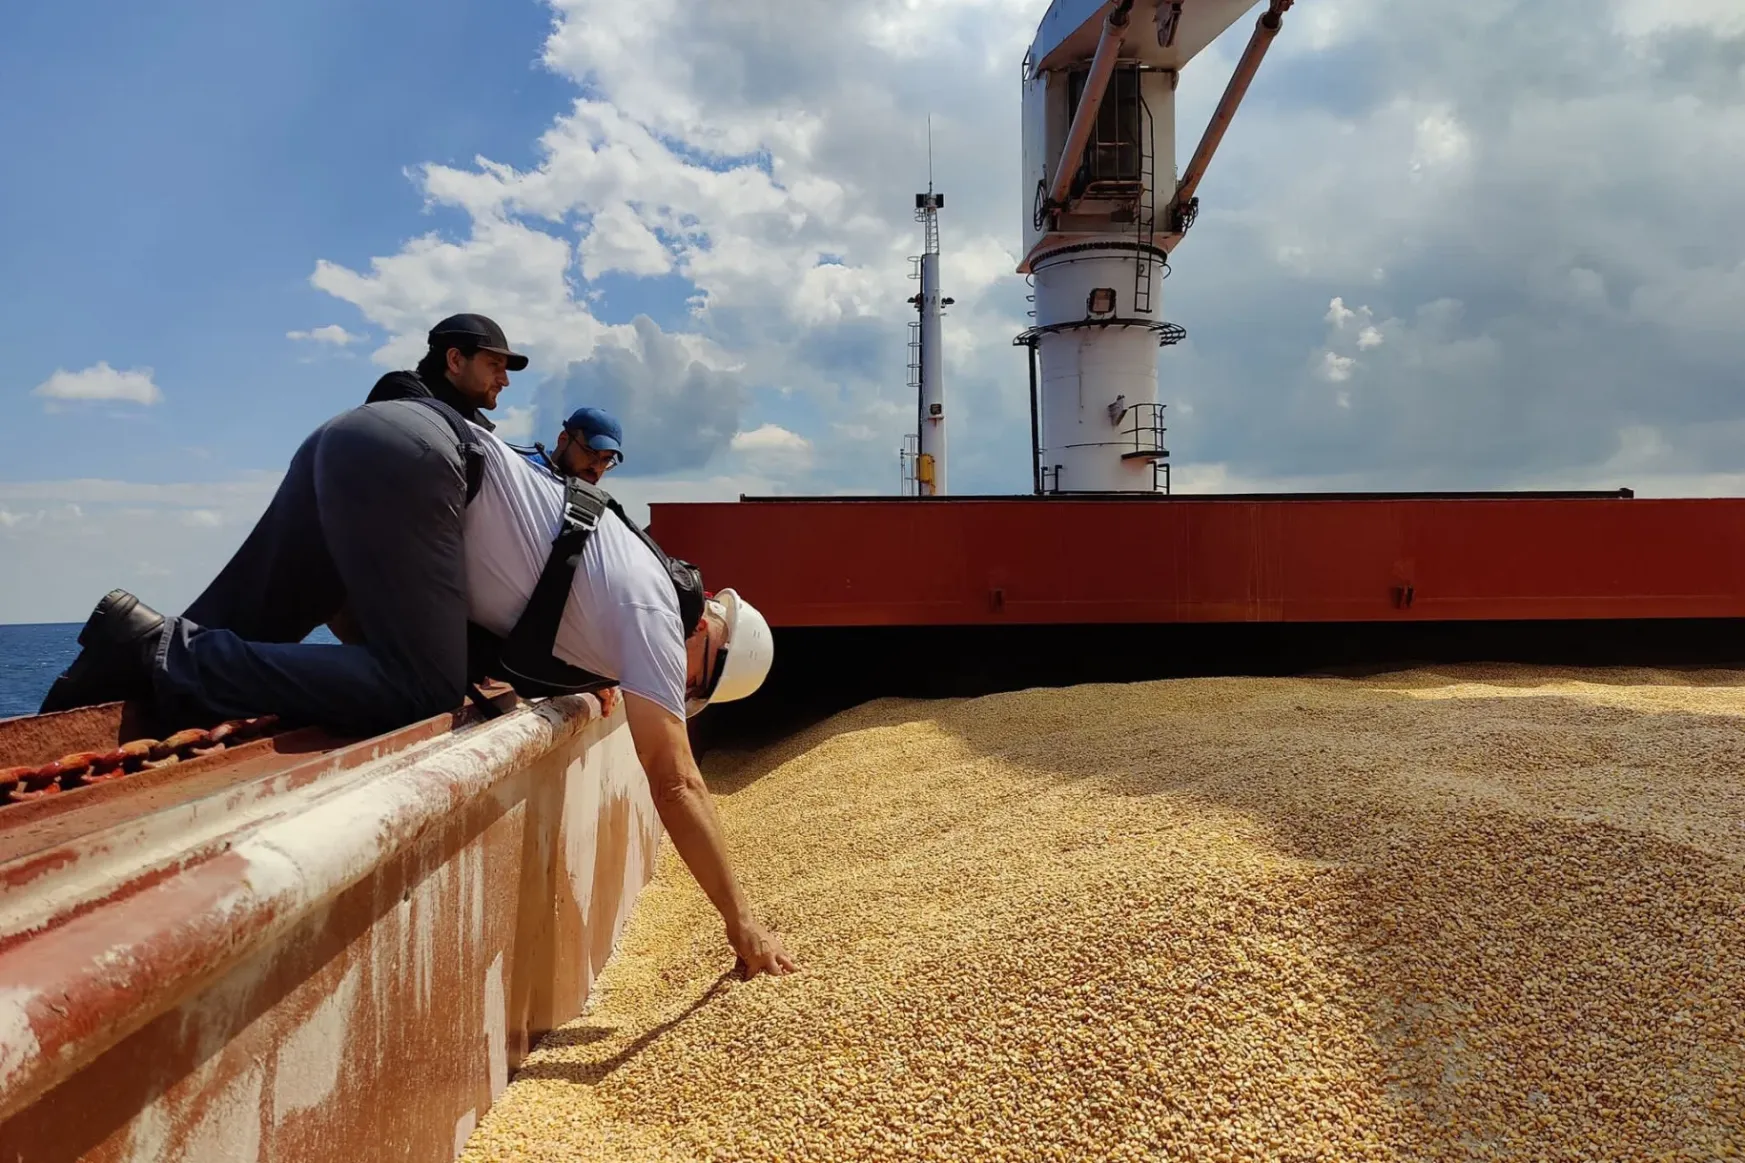 A nagy kukoricaháború: hiányzik az ukrán áru, az iparnak elege van az állami szabályozásból